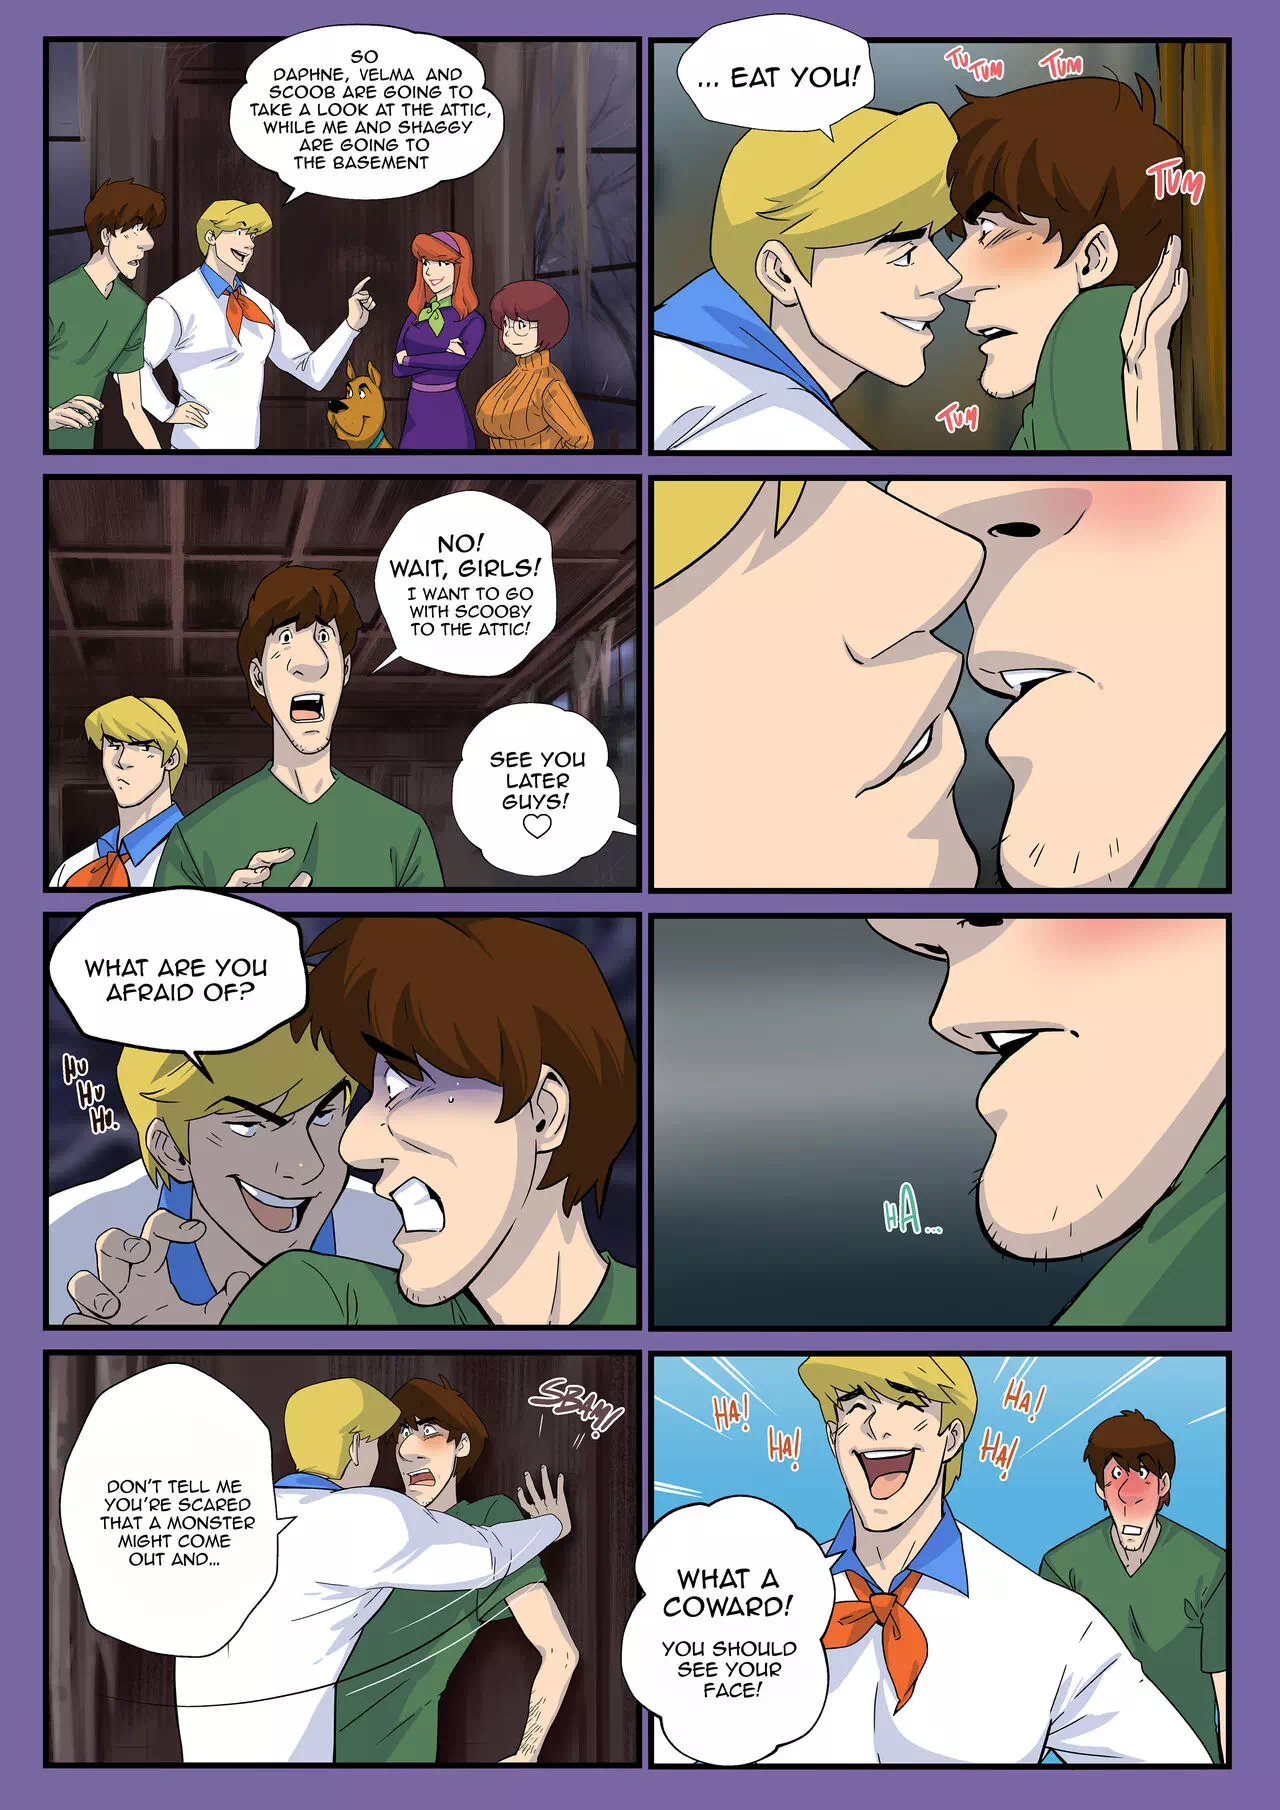 1280px x 1810px - Yaoi porn comics Scooby-Doo â€“ Scooby Dudes: The Cumpire case!